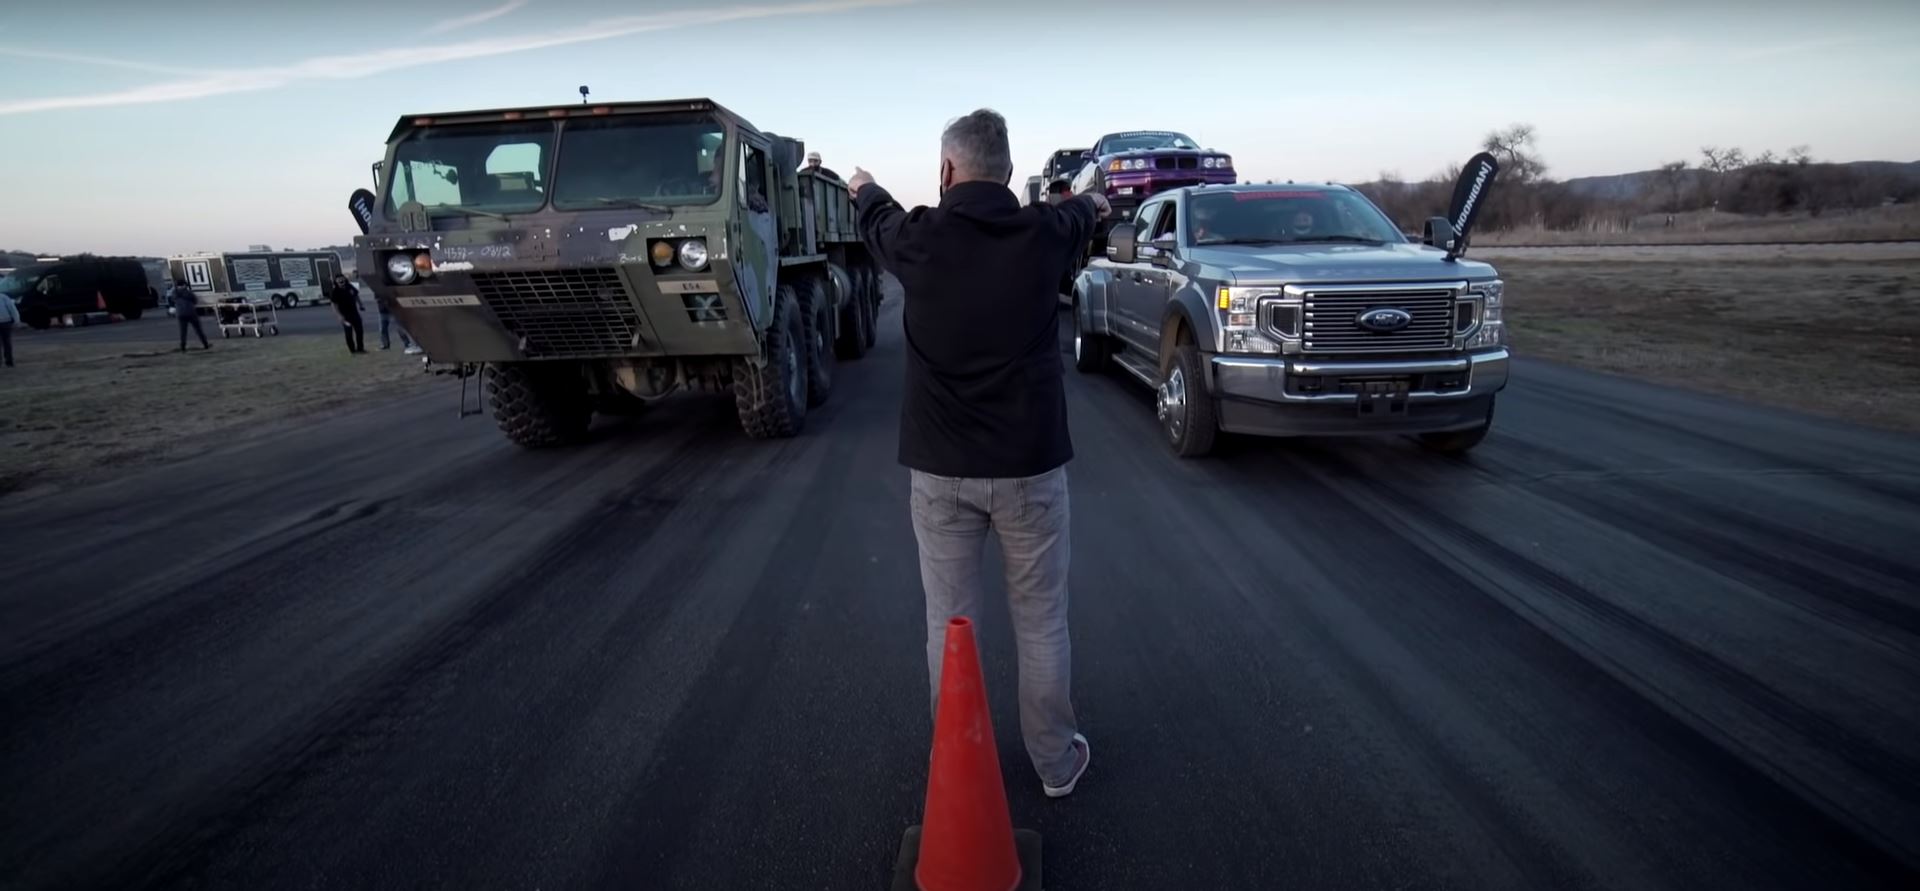 Сражение грузовиков – на видео показали необычную дрэг-гонку (Видео)